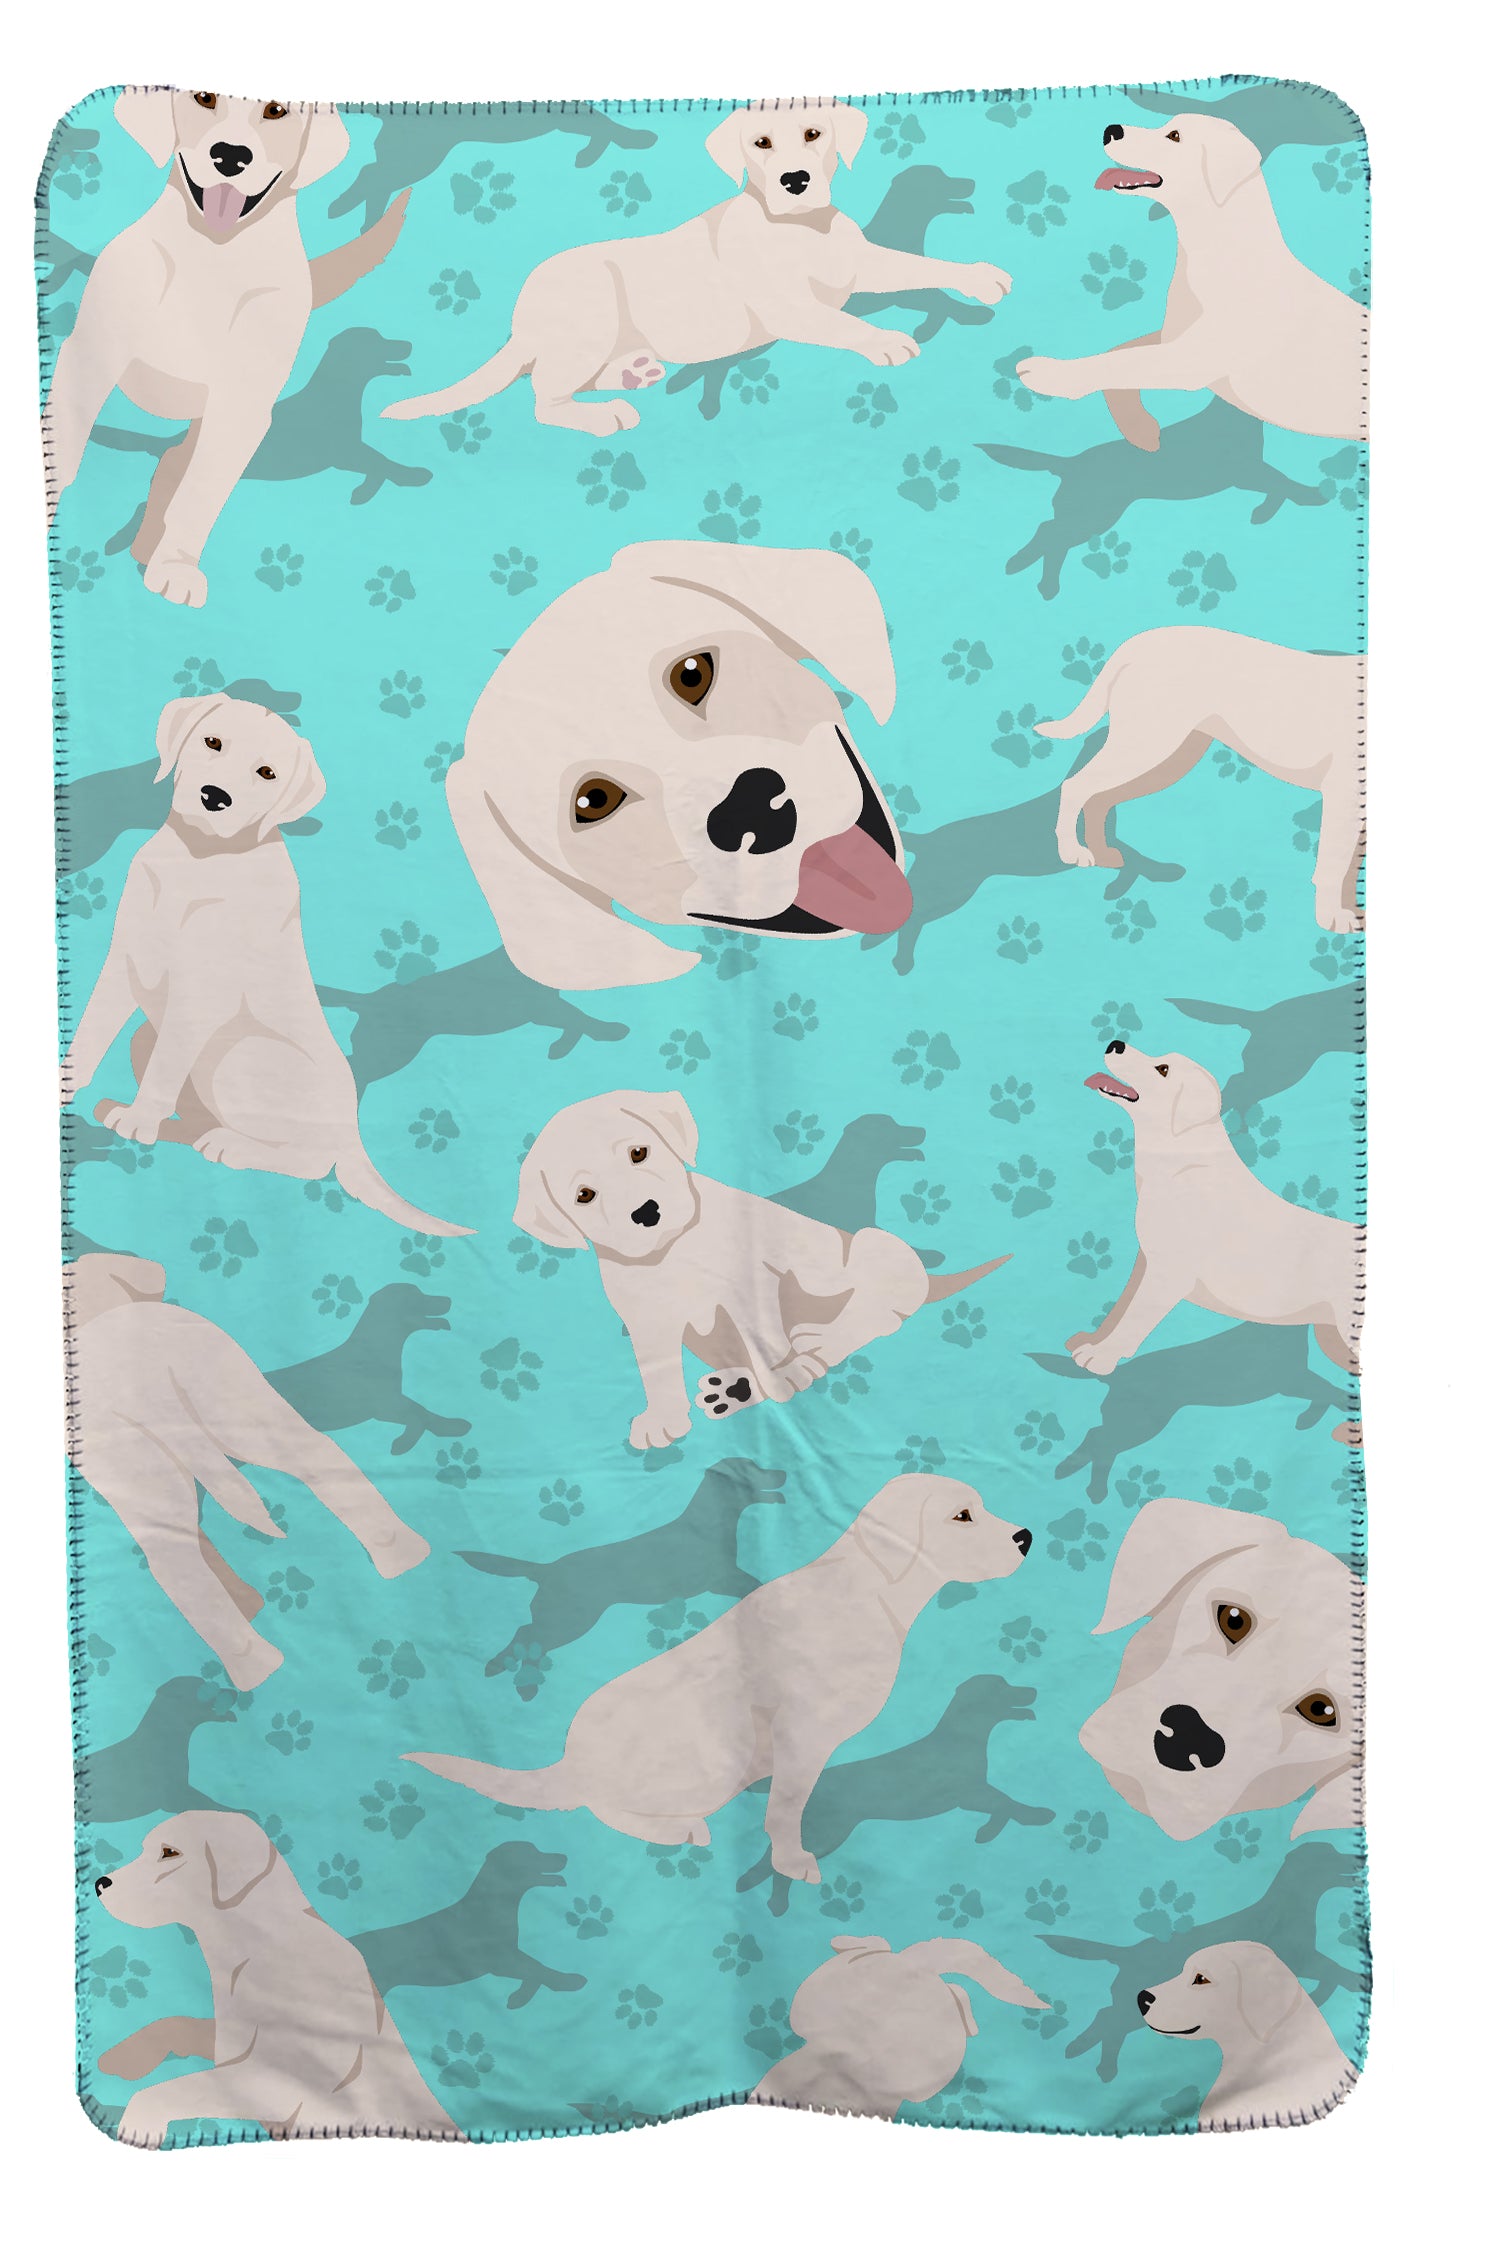 Buy this White Cream Labrador Retriever Soft Travel Blanket with Bag